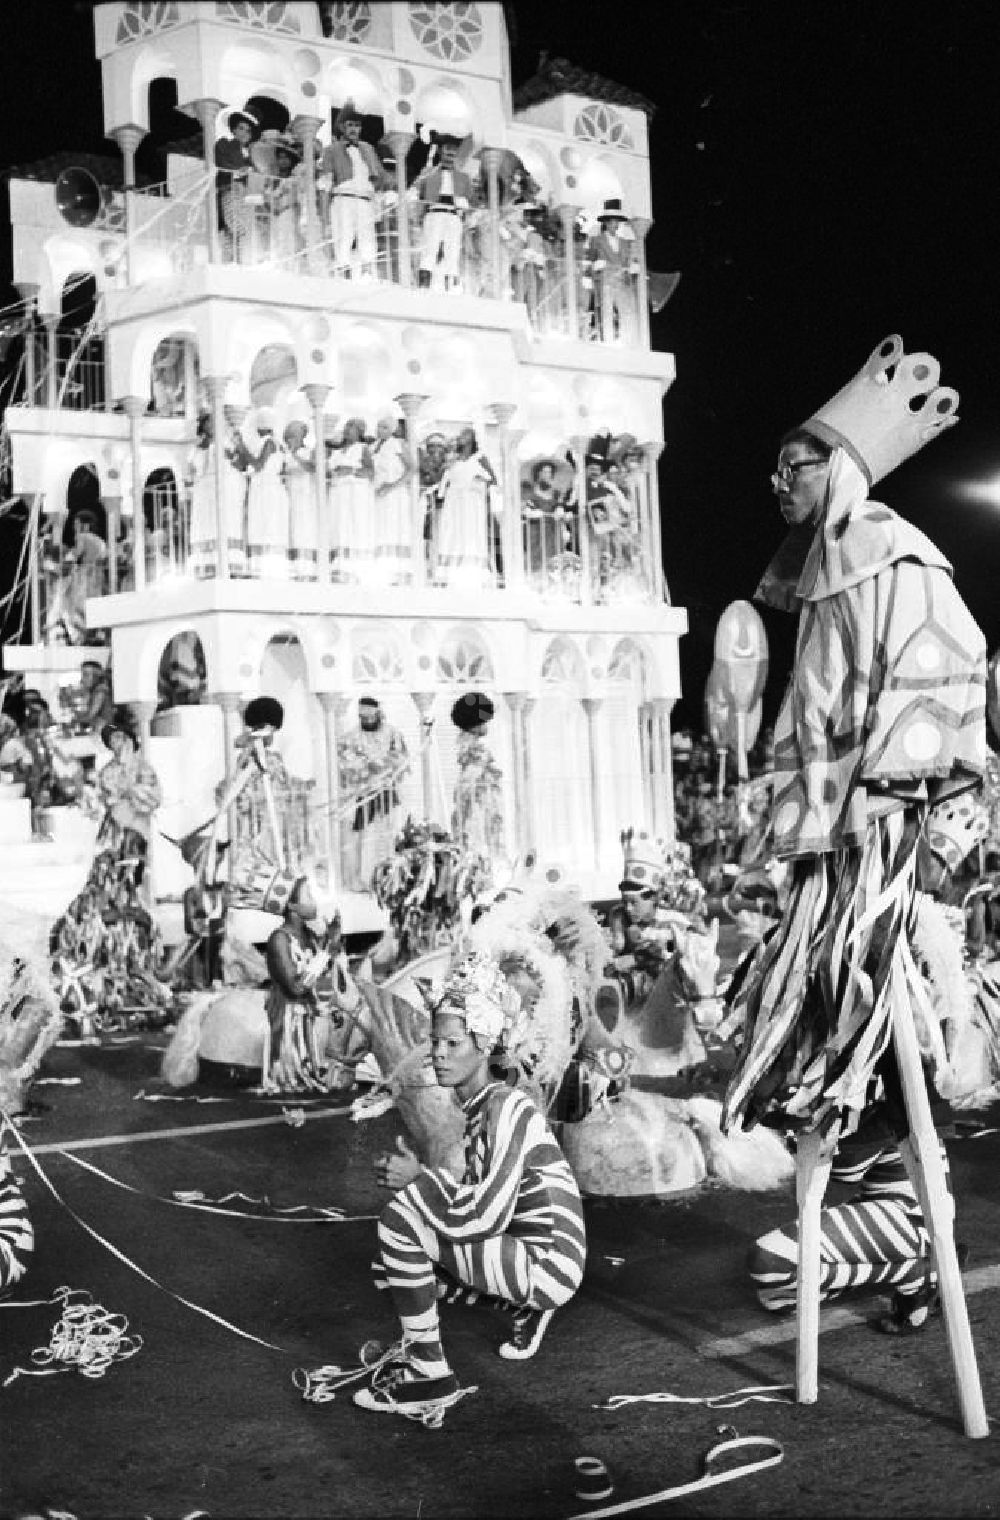 Havanna: er Jugend und Studenten vom 28.07. - 05.08.1978. Sambagruppe in fantasivollen Kostümen, Stelzenläufer und Festkulissen. Karneval hat auf Kuba eine lange Tradition, besonders in Santiago de Cuba. Er verschmilzt karibische, brasilianische und afrikanische Einflüsse. Die Weltfestspiele standen unter dem Motto: Für antiimperialistische Solidarität, Frieden und Freundschaft. 18.500 Jugendliche aus 145 Ländern nahmen teil, darunter 20